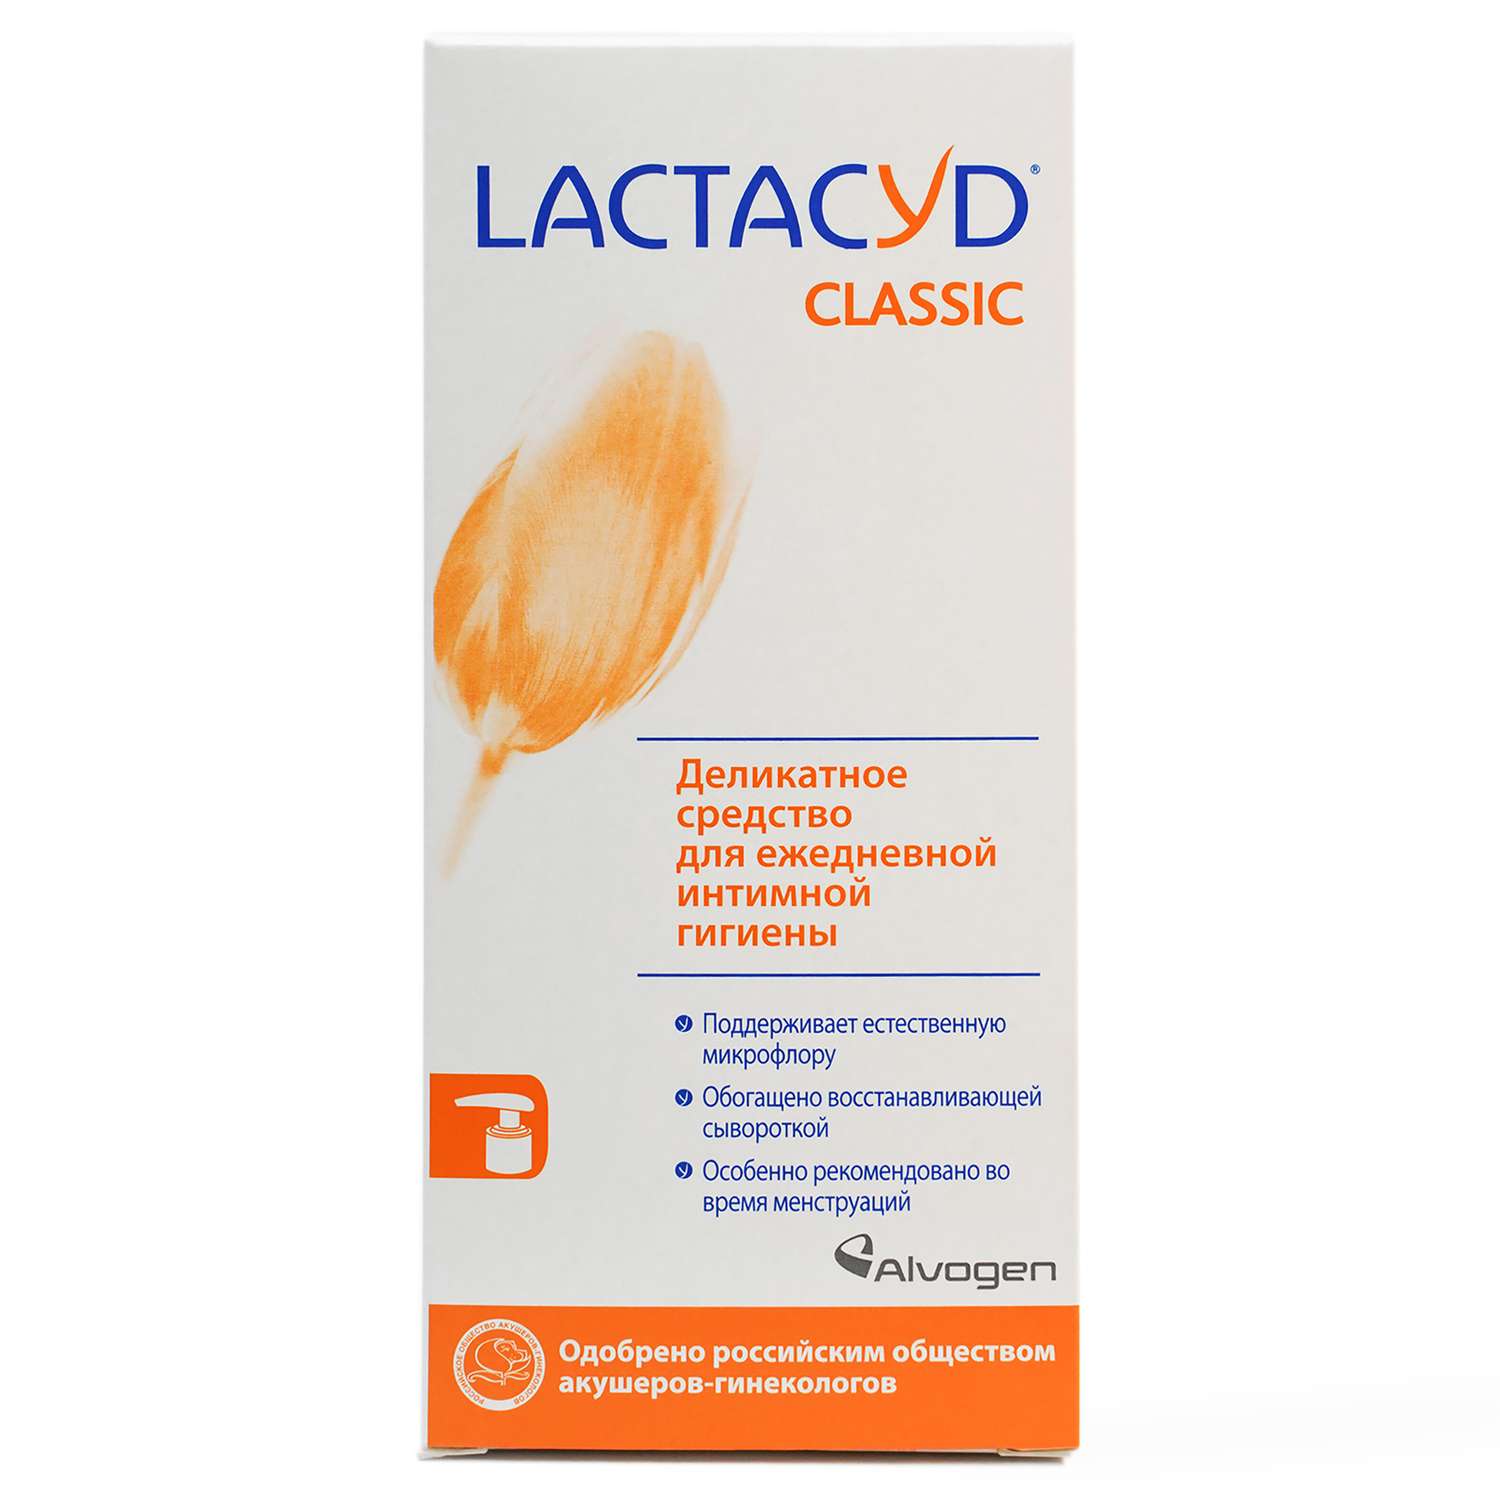 Лактацид классик. Lactacyd Classic деликатное средство для ежедневной интимной гиг PH 5,2 200мл. Лактацид для интимной гигиены с молочной кислотой. Лактацид Классик 200 мл. Лактацид 3.5.